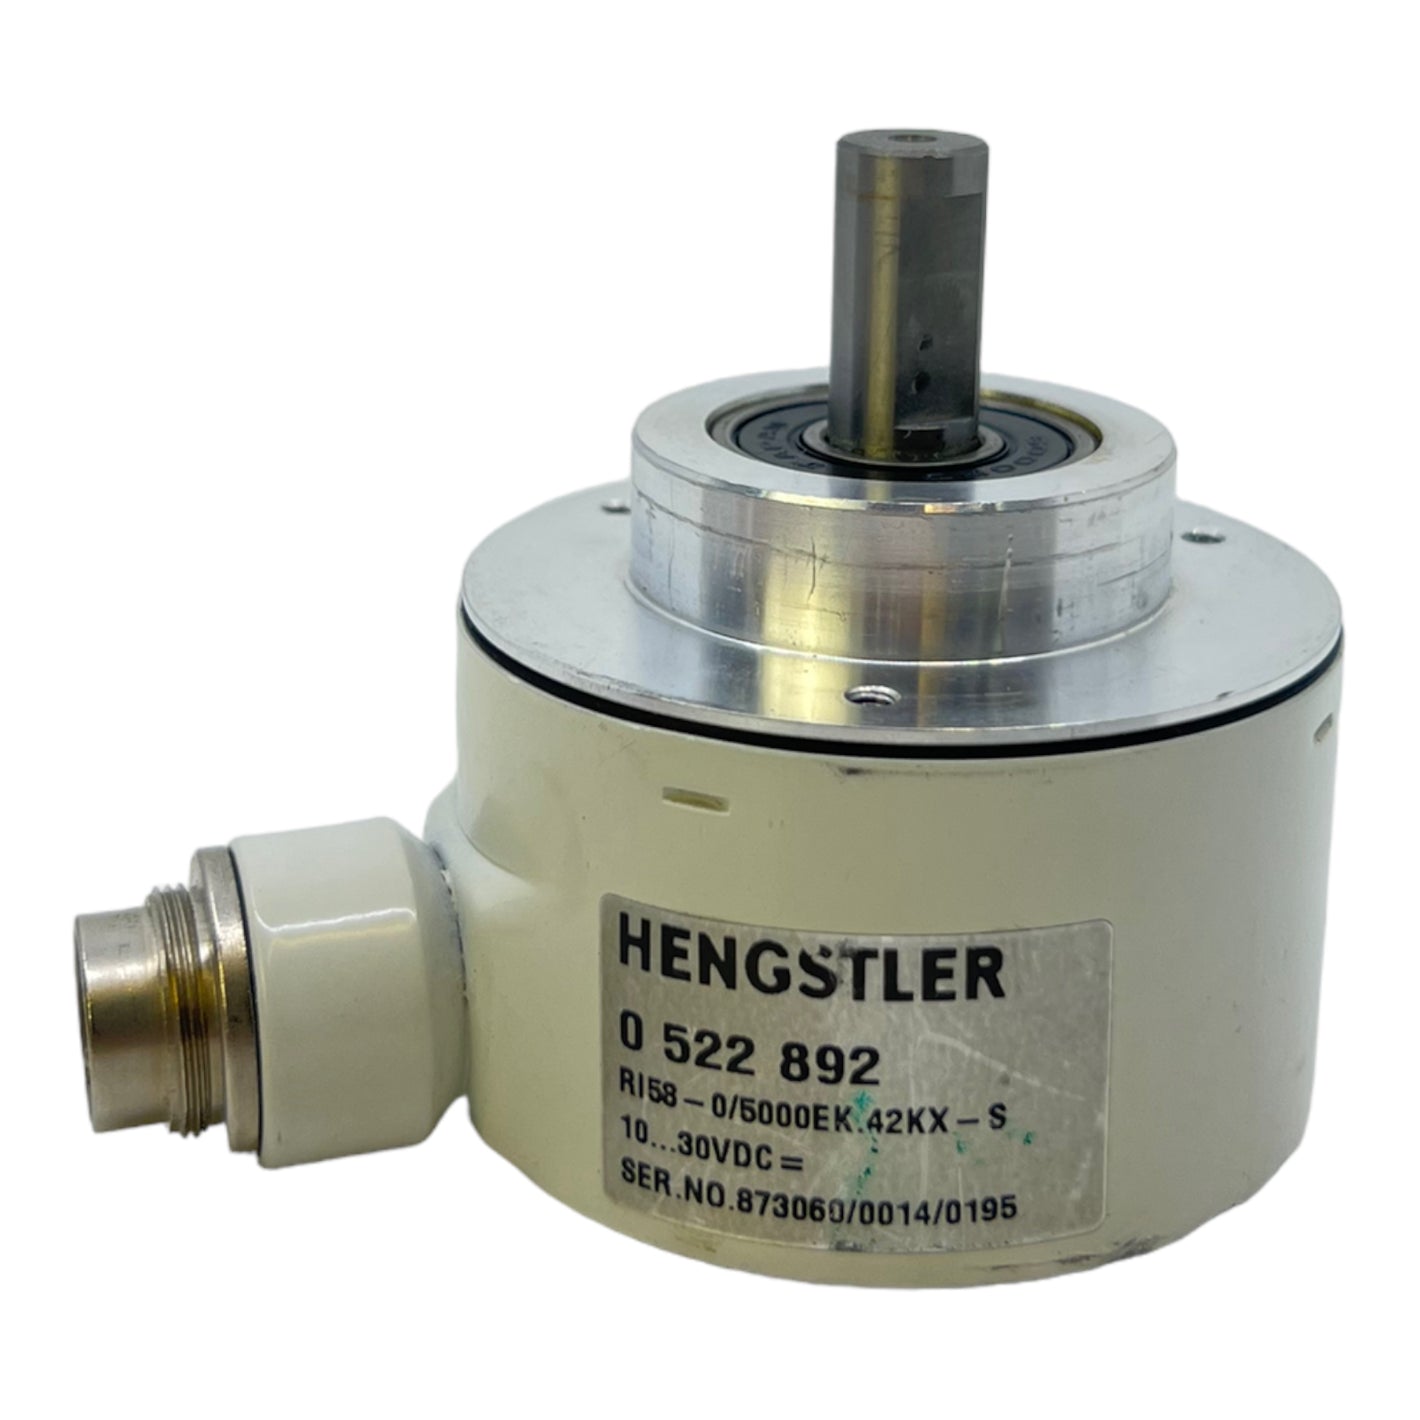 Hengstler RI58-0/500EK.42KX-S encoder 0522892 10…30VDC Hengstler encoder 